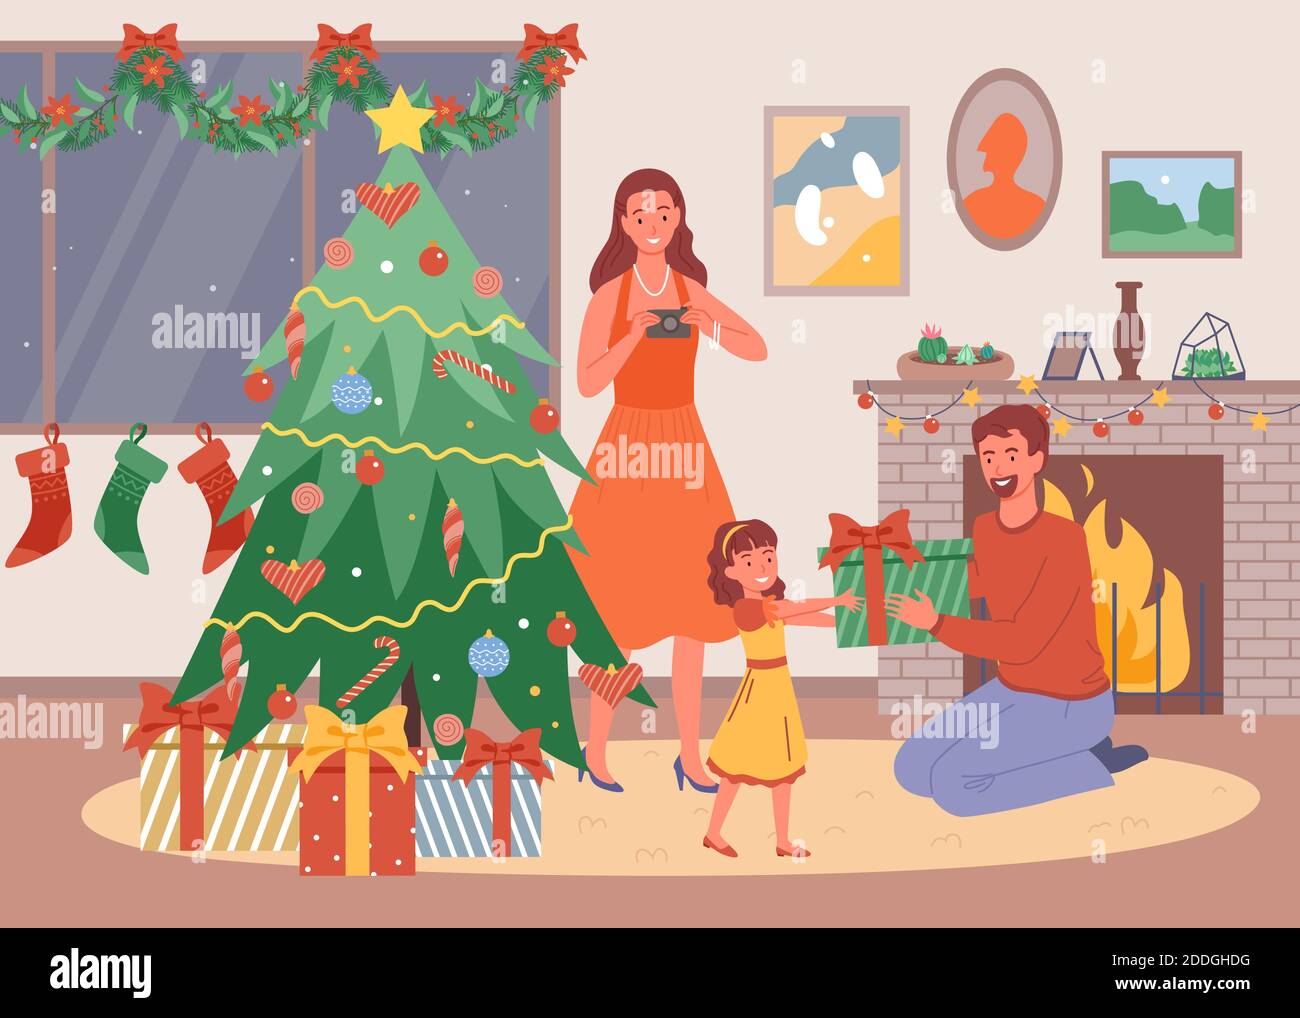 Illustration vectorielle de la famille heureuse à la maison, le soir de Noël, la fille donne un cadeau à son père, parents heureux et enfant célèbrent Noël à la maison. Illustration de Vecteur